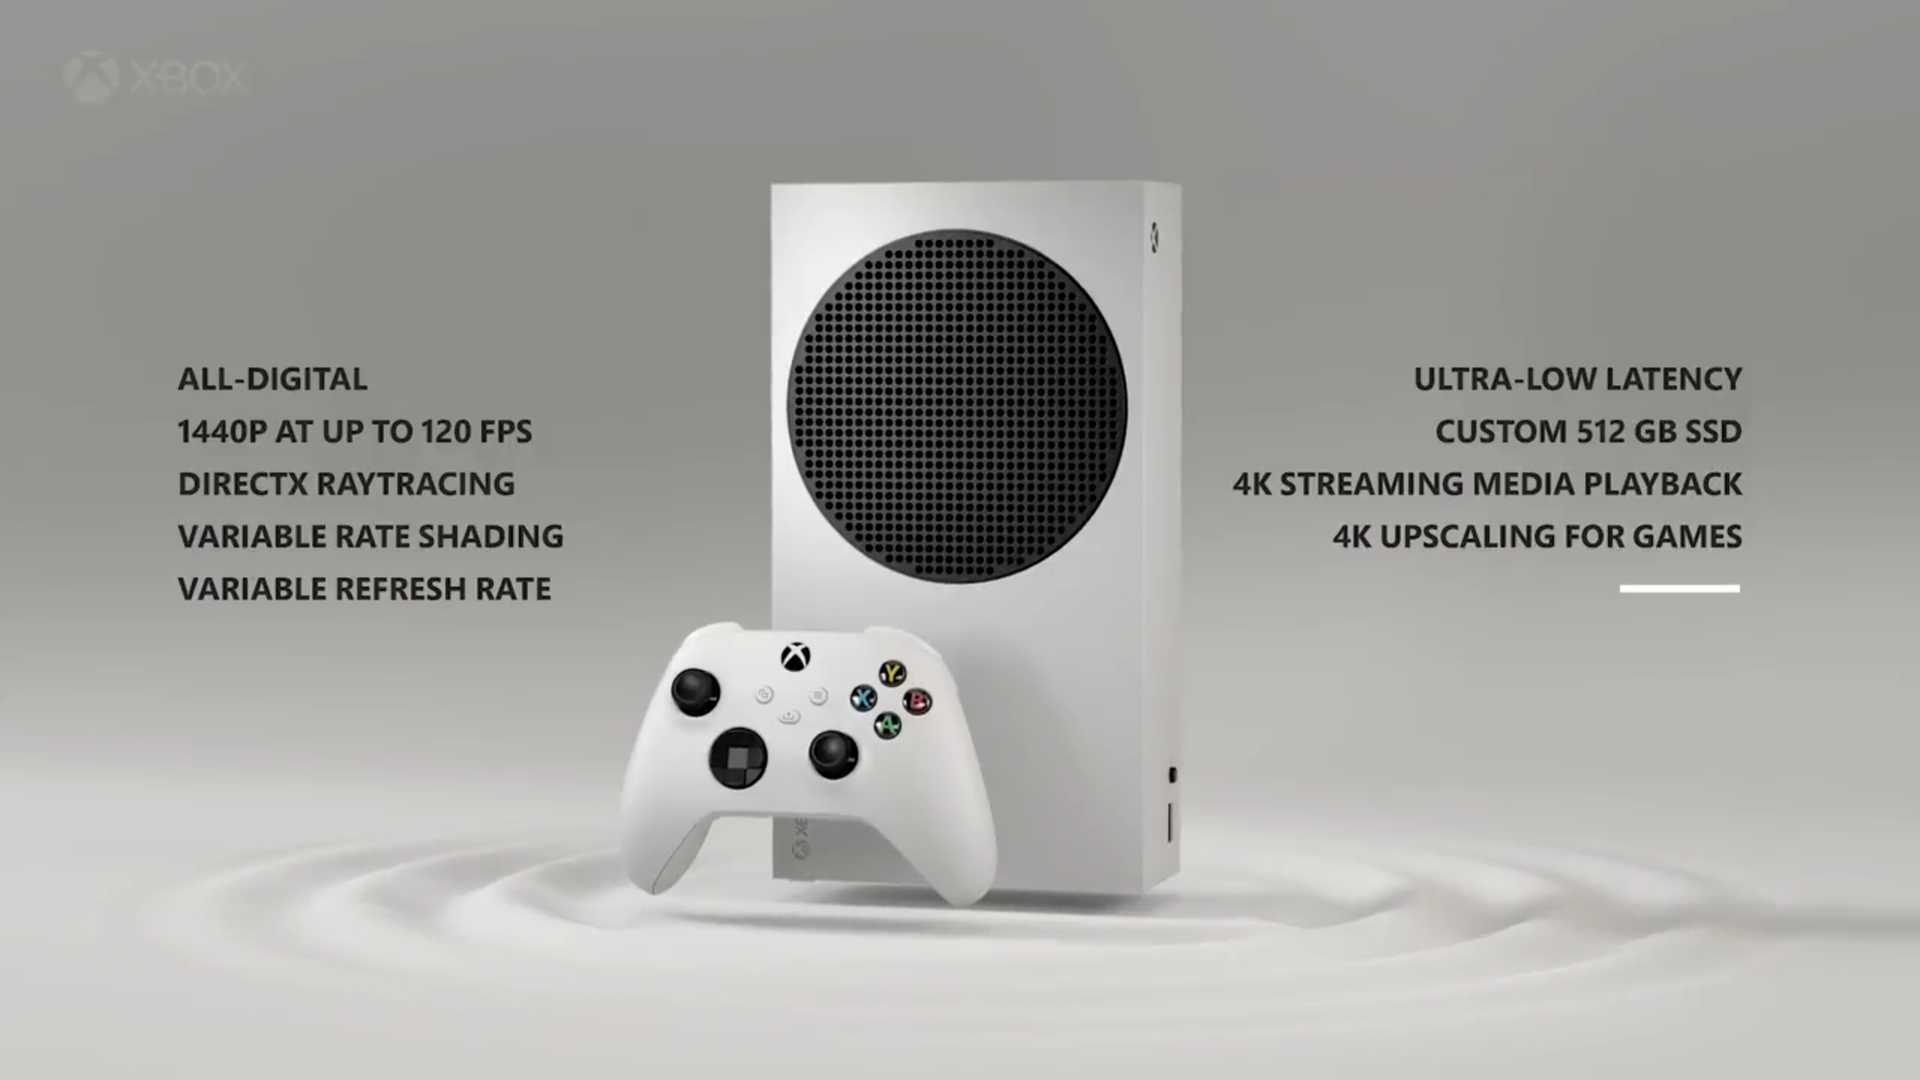 Worden Misbruik Buitenlander Xbox Series S specs: 1440p gaming, high refresh rate, all-digital